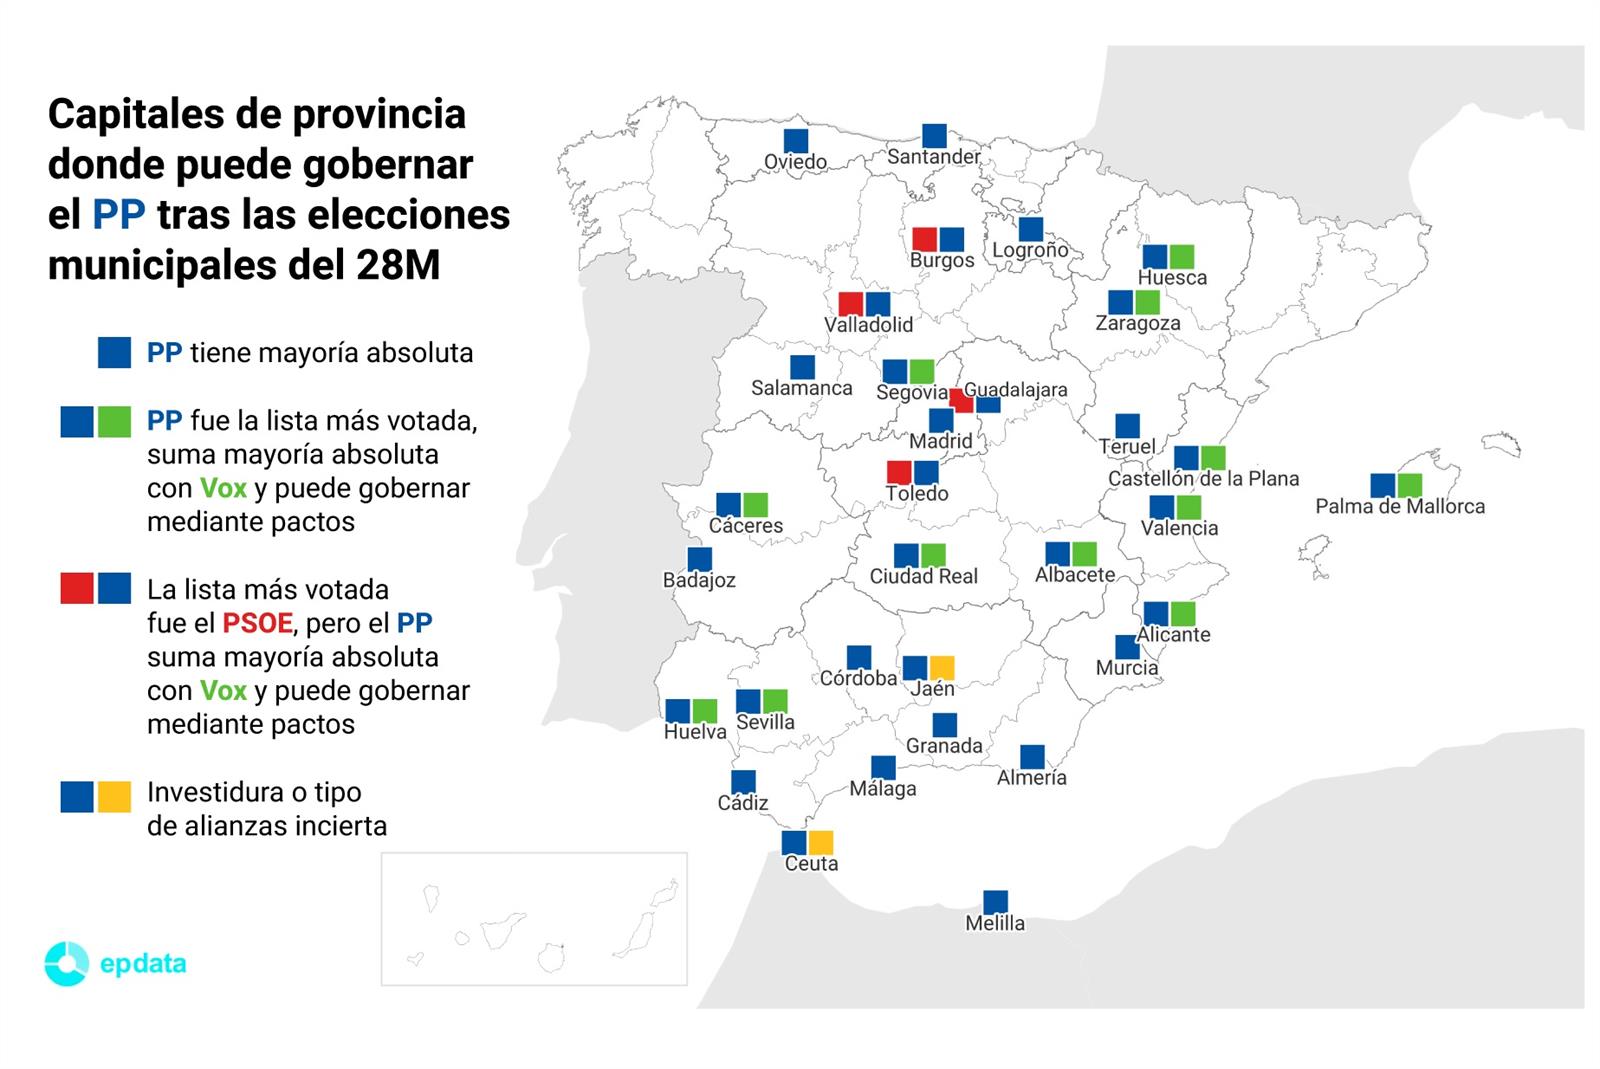 Capitales de provincia donde puede goebrnar el PP tras las elecciones municipales del 28M.